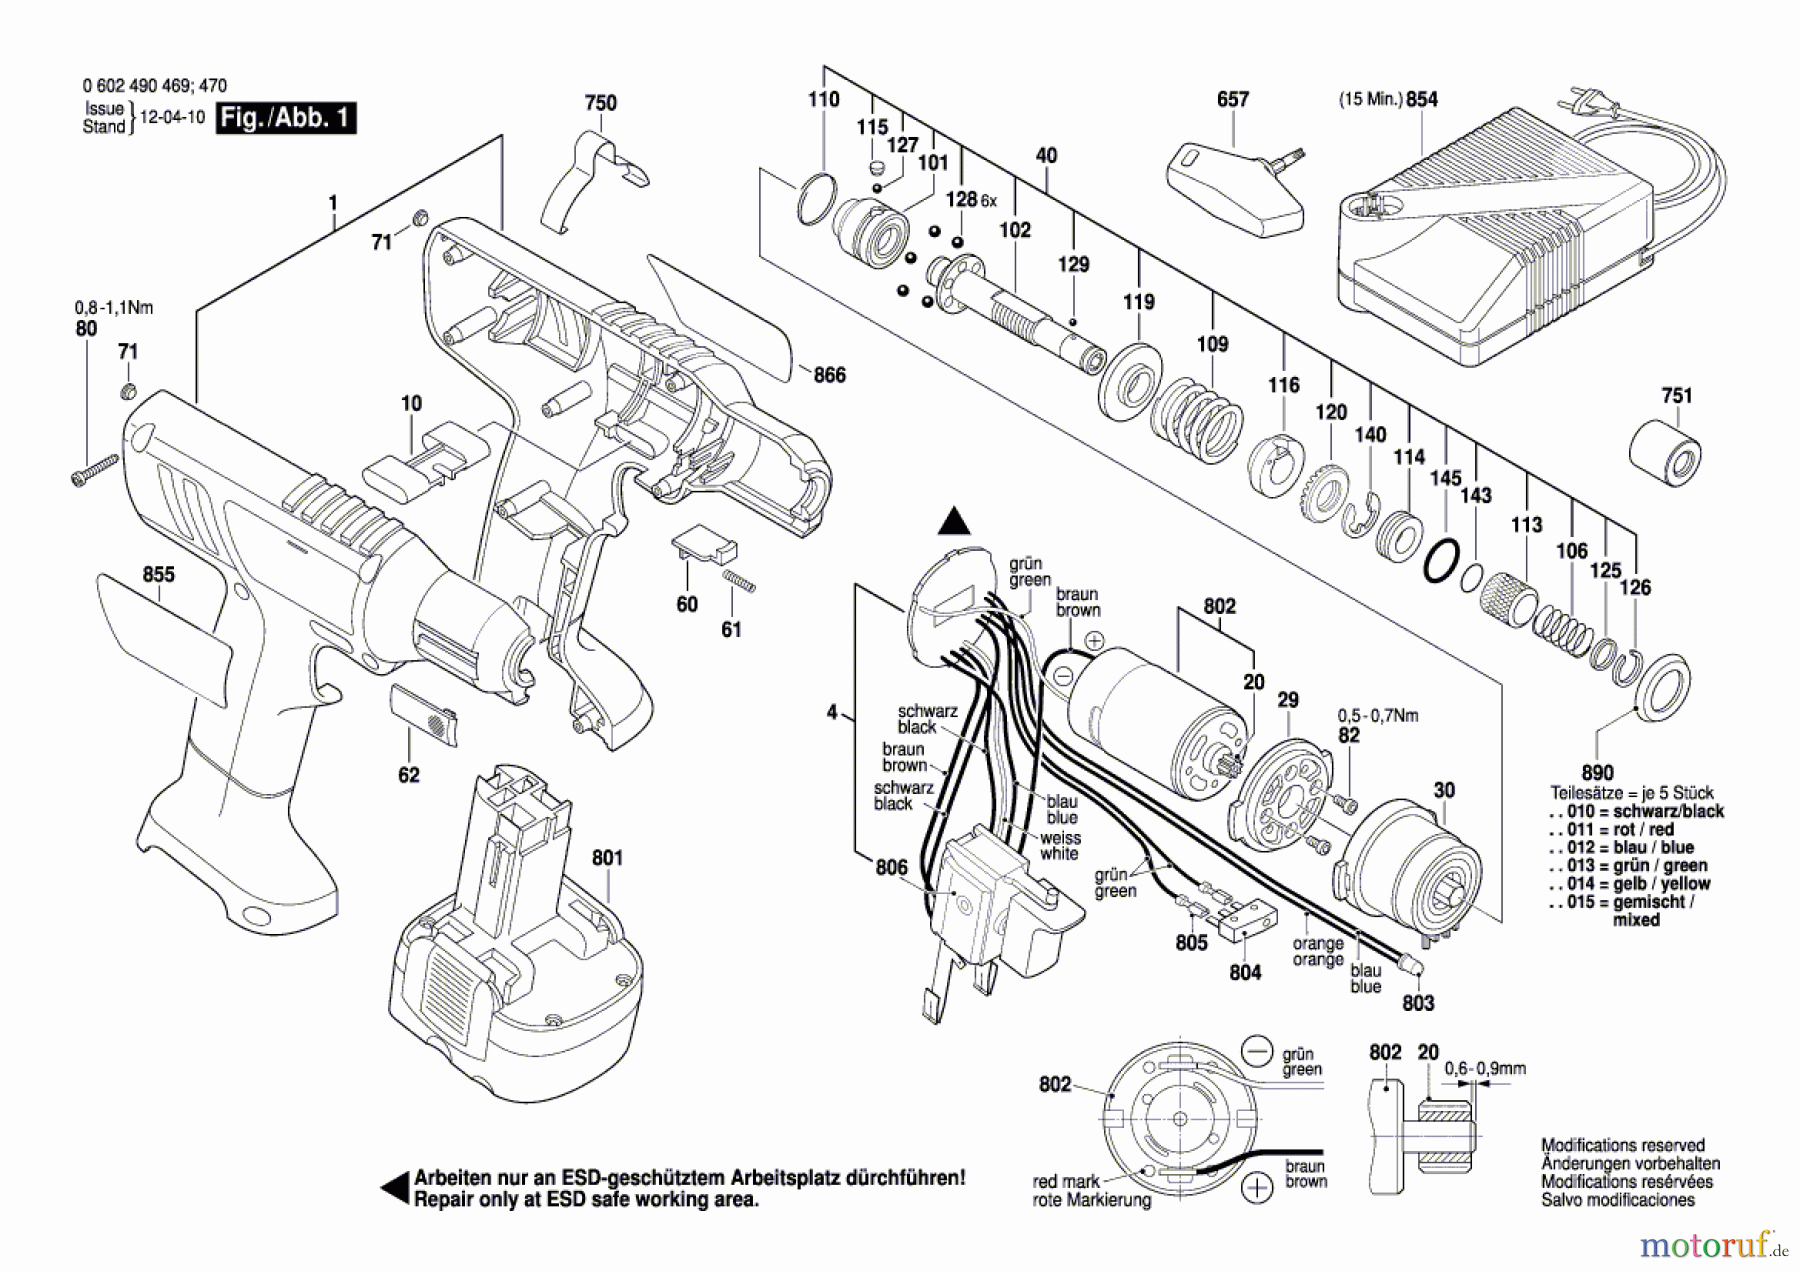  Bosch Akku Werkzeug Akku-Schrauber EXACT 60 Seite 1